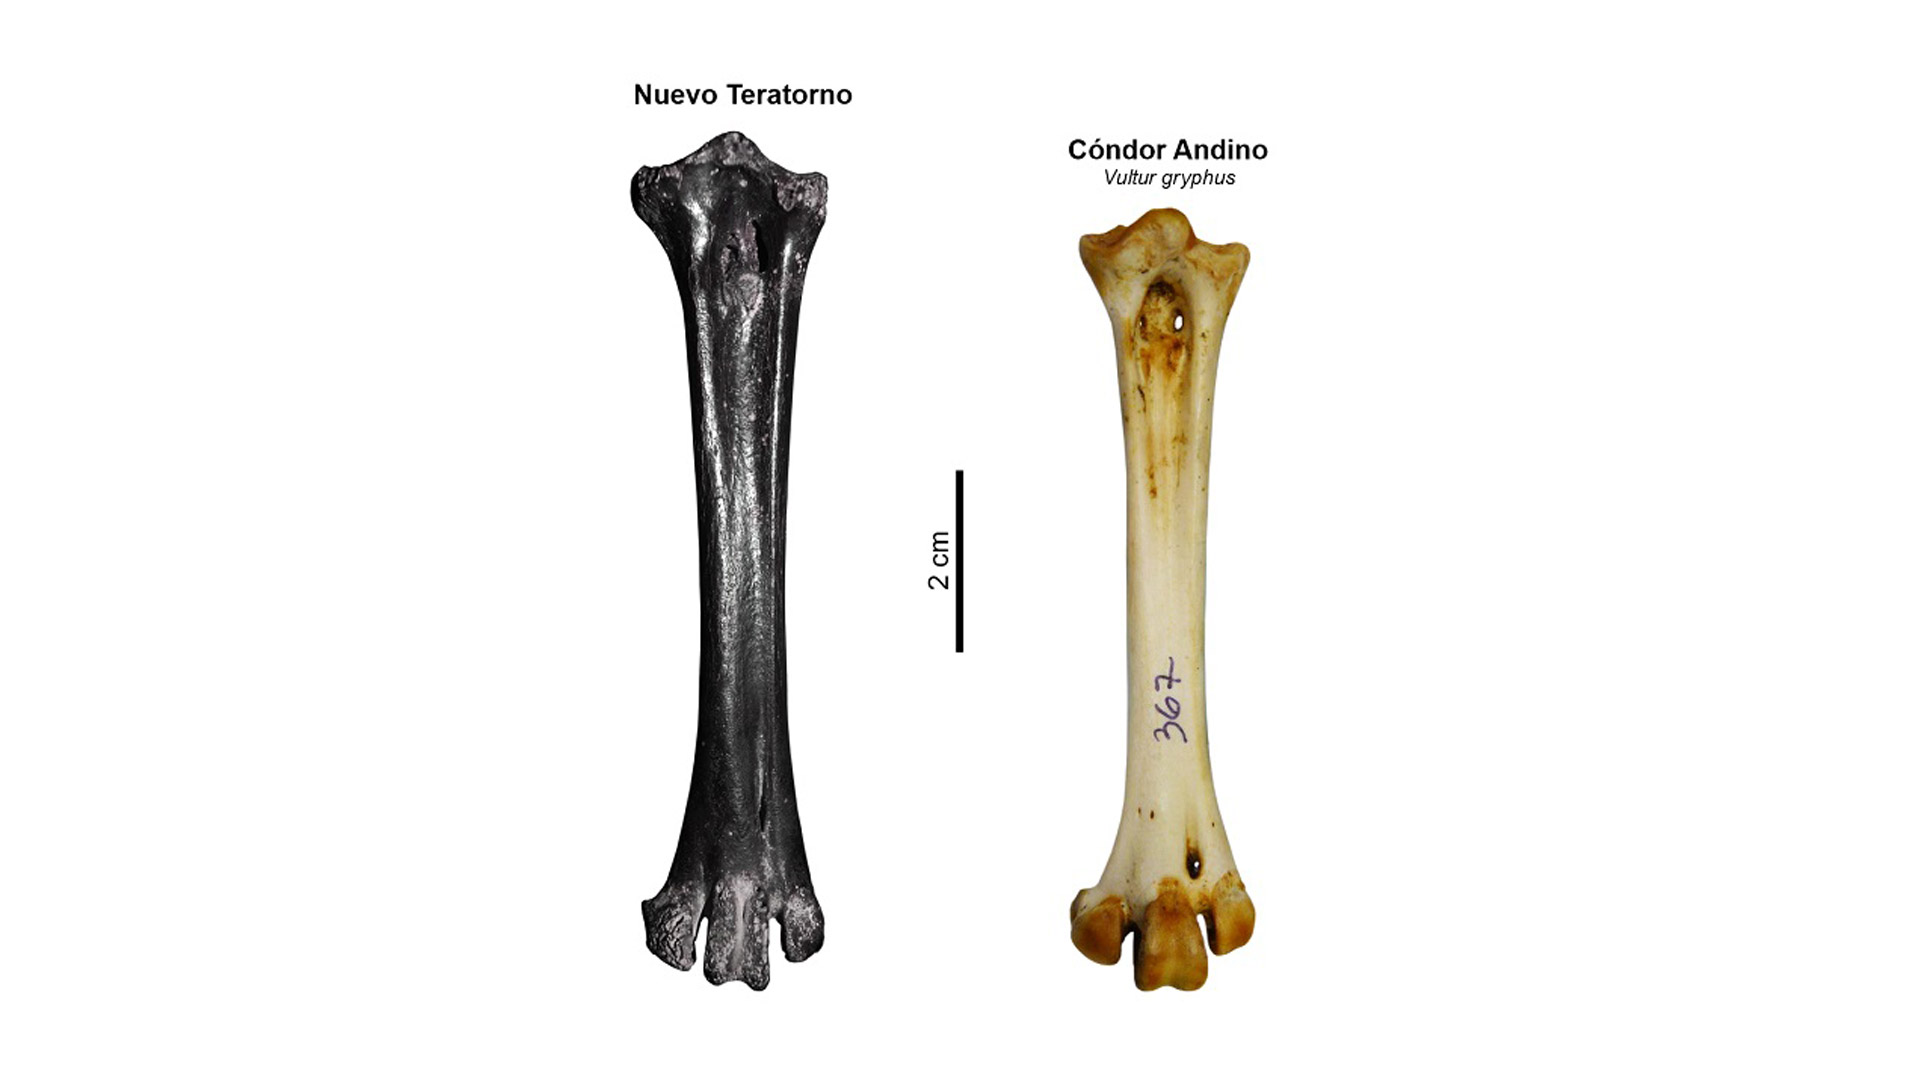 Comparación de los huesos de un Nuevo Teratorno versus el Cóndor